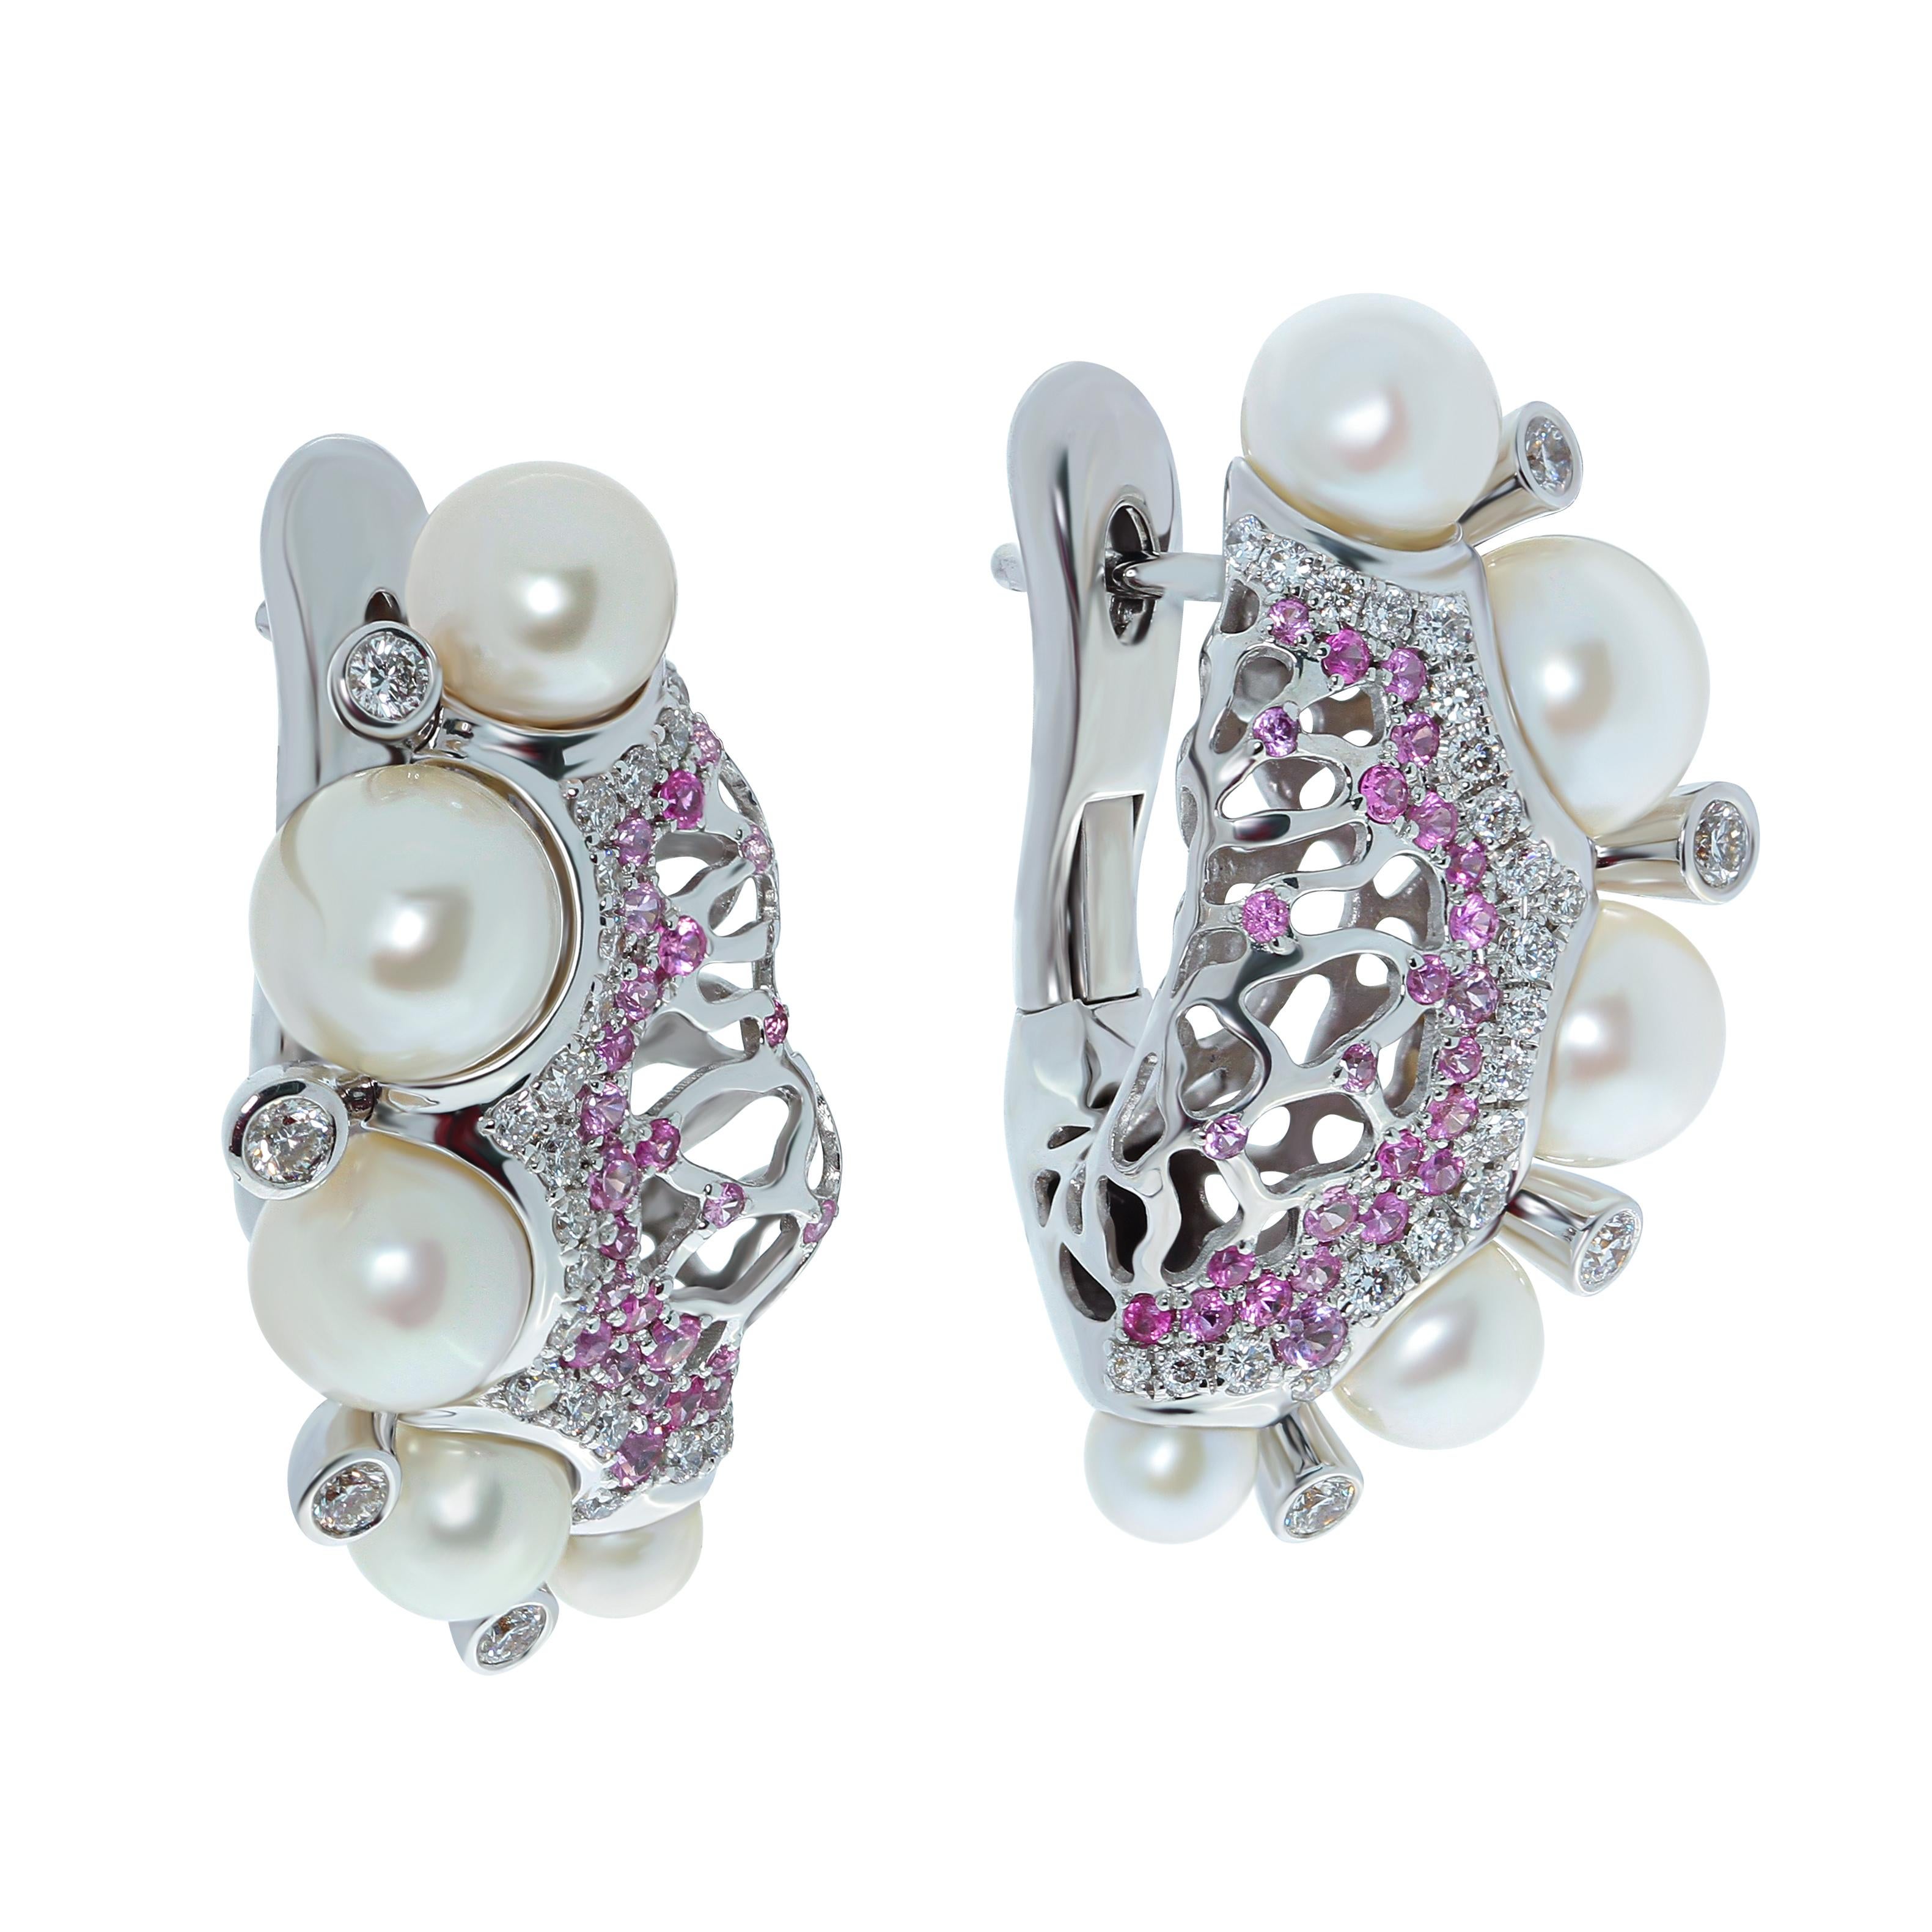 Perlen 10 Stück Diamanten Rosa Saphir 18 Karat Weißgold Korallen-Reef-Ohrringe
Ohrringe aus der Coral Reef Collection setzen das Thema des Meeresmotivs fort. Er sieht aus wie Korallen, die von Perlen umgeben sind, die von Muscheln herabgeworfen